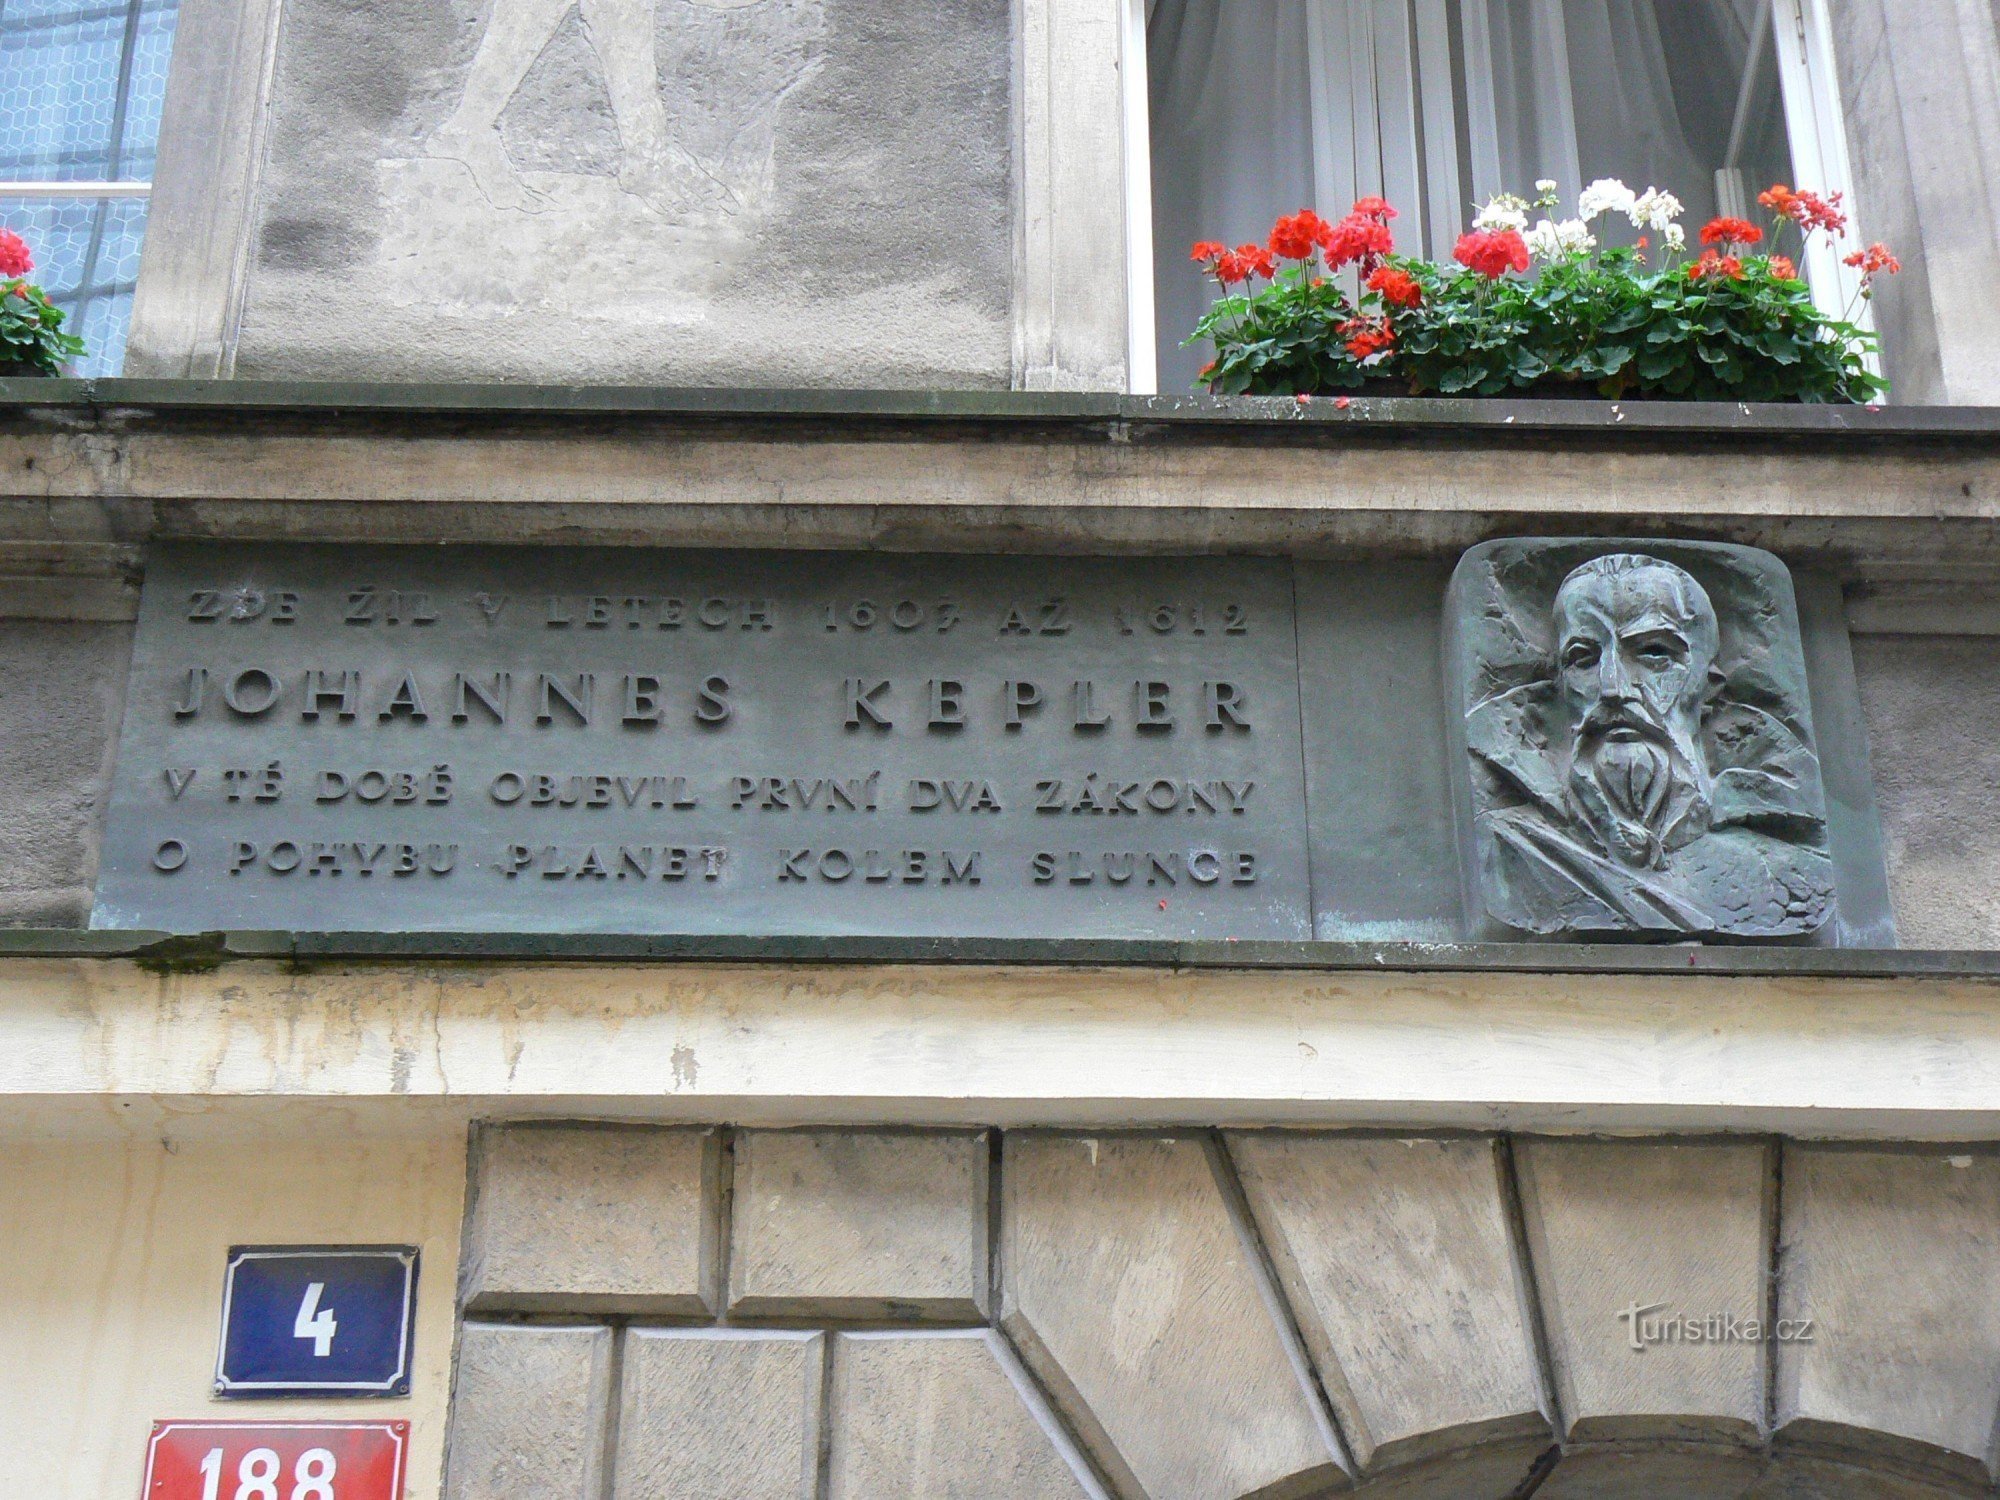 Spominska plošča Johannesa Keplerja